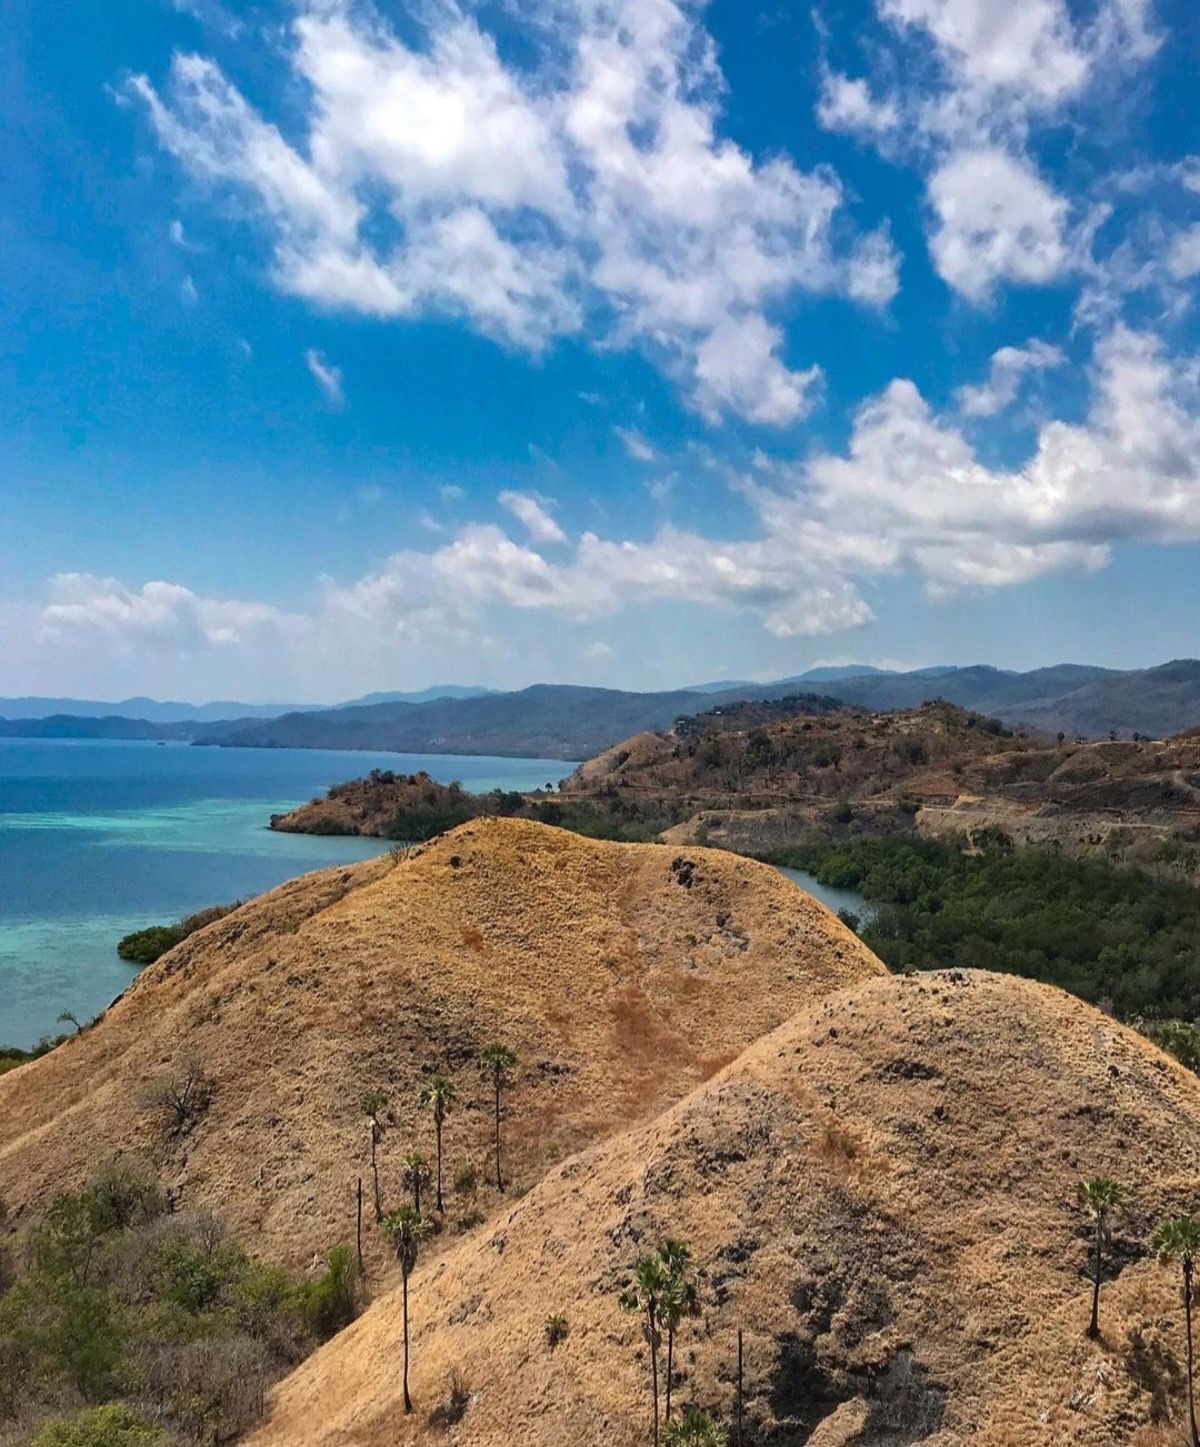 11 Objek Destinasi Wisata Terbaik yang Wajib dikunjungi di Labuan Bajo